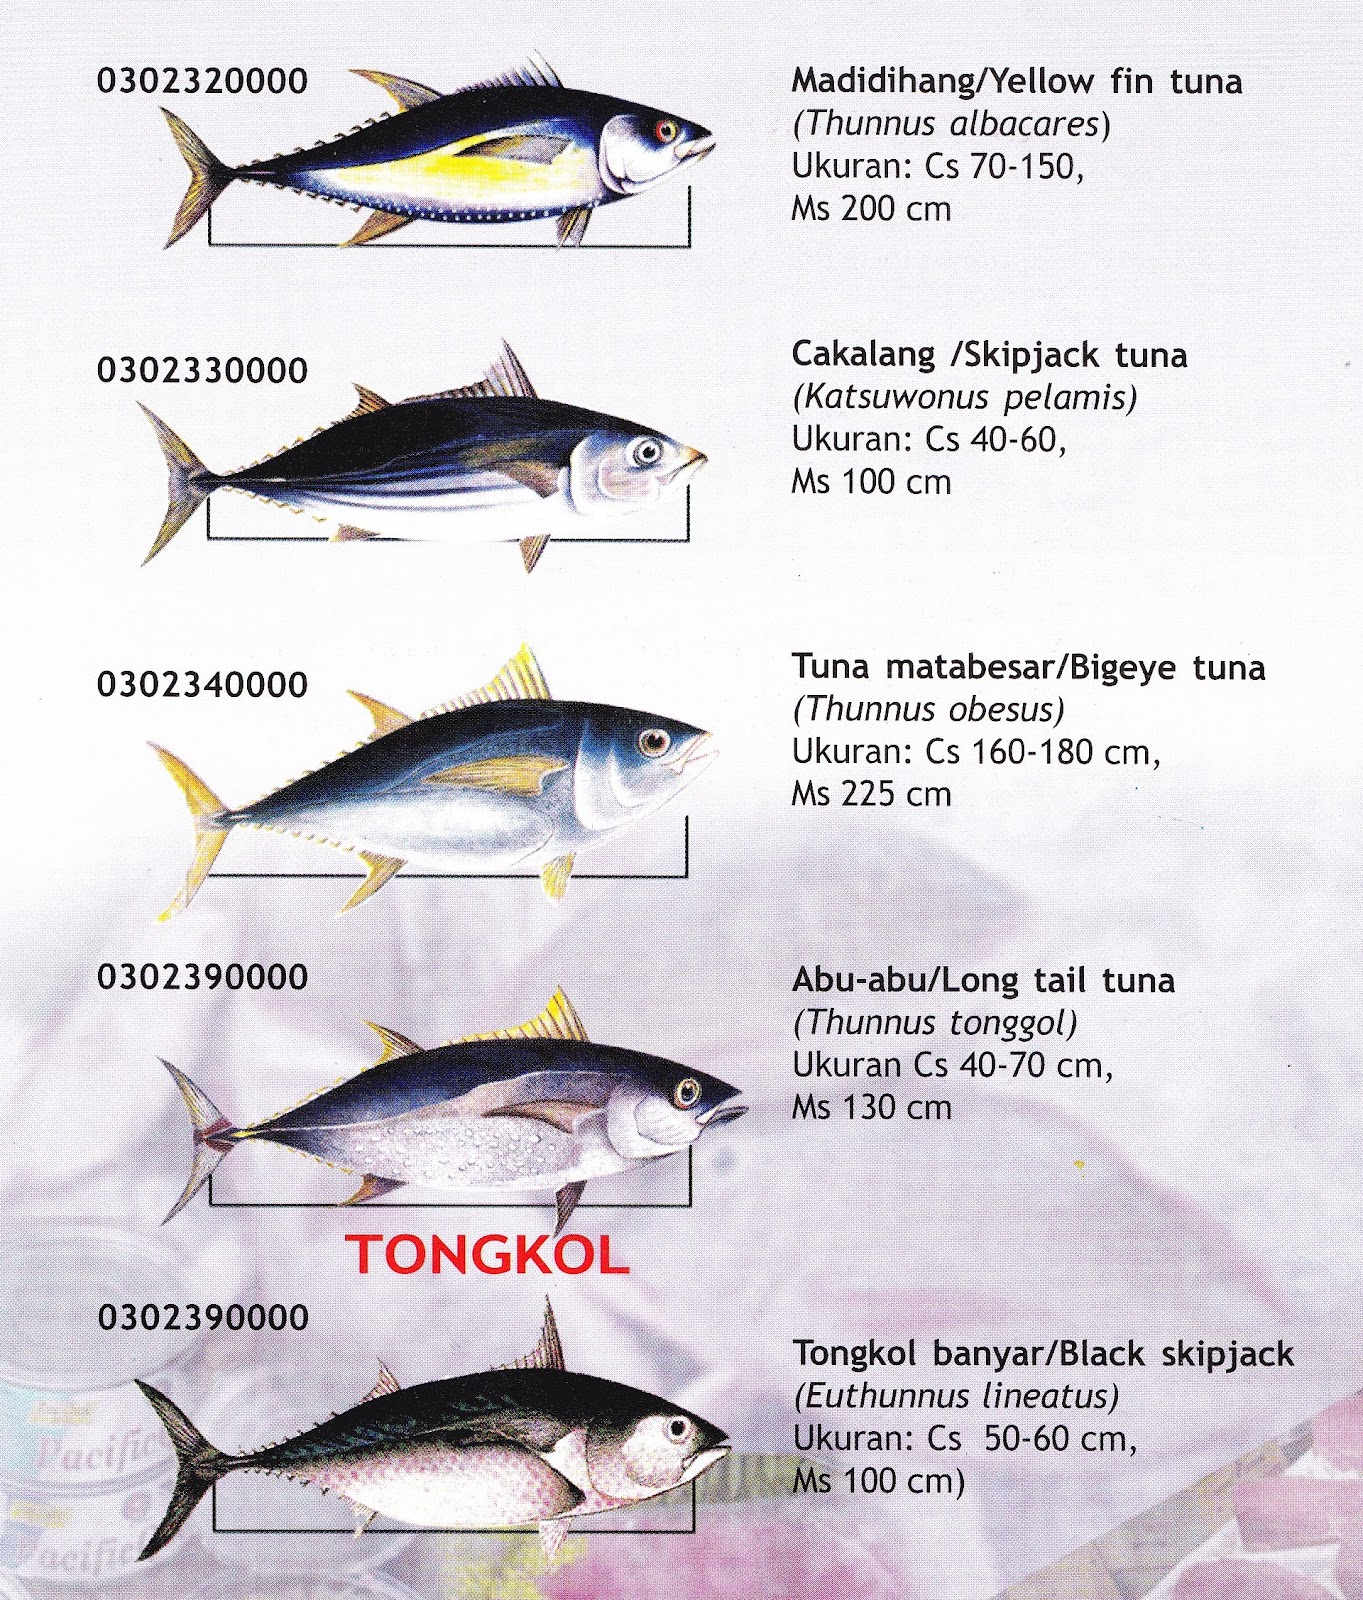 Tuna Fish Distribution